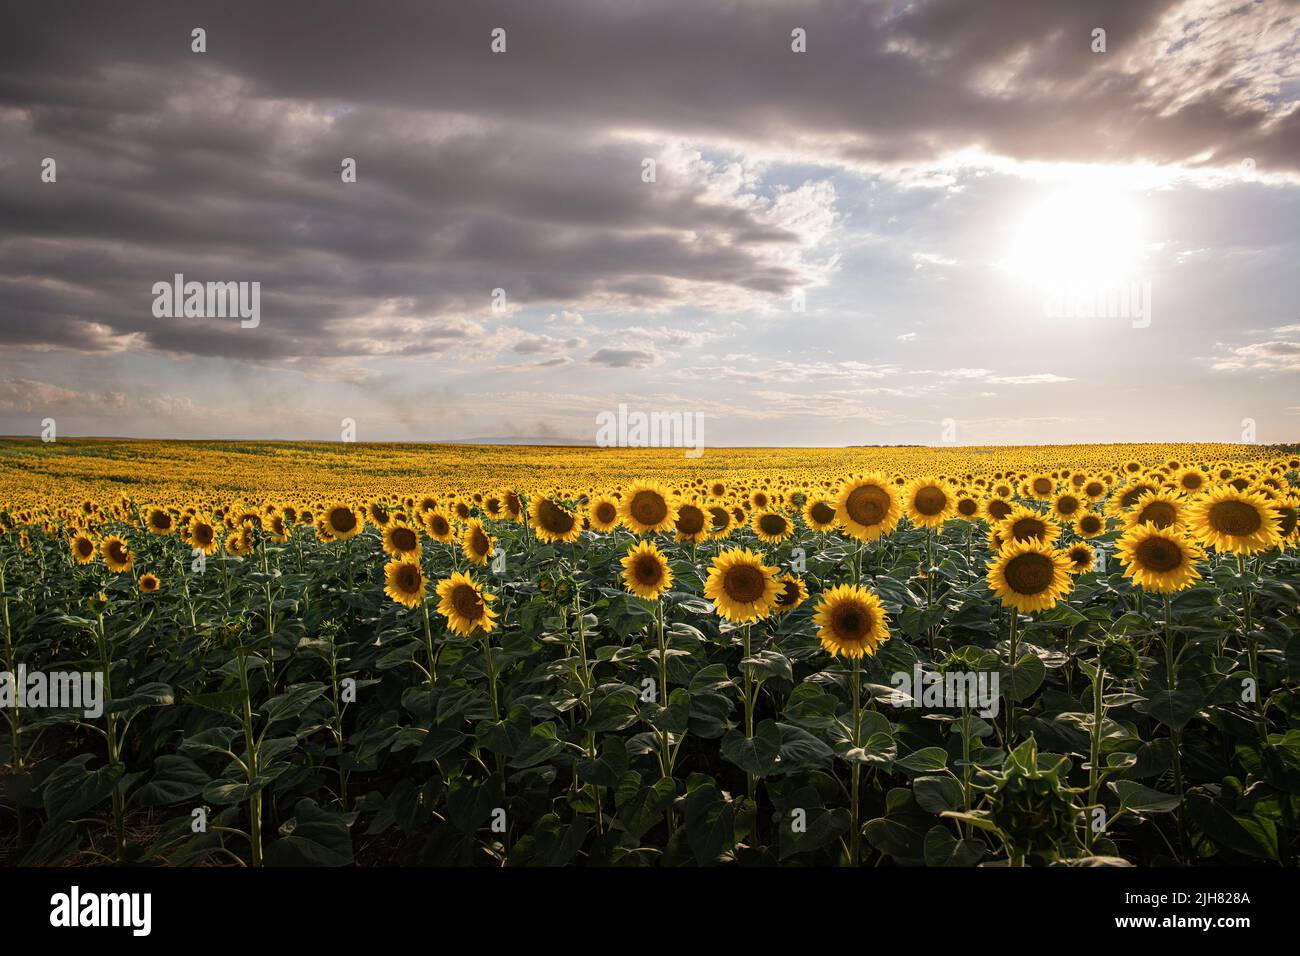 Sunflower field on sunset. Beautiful nature landscape panorama. Stock Photo